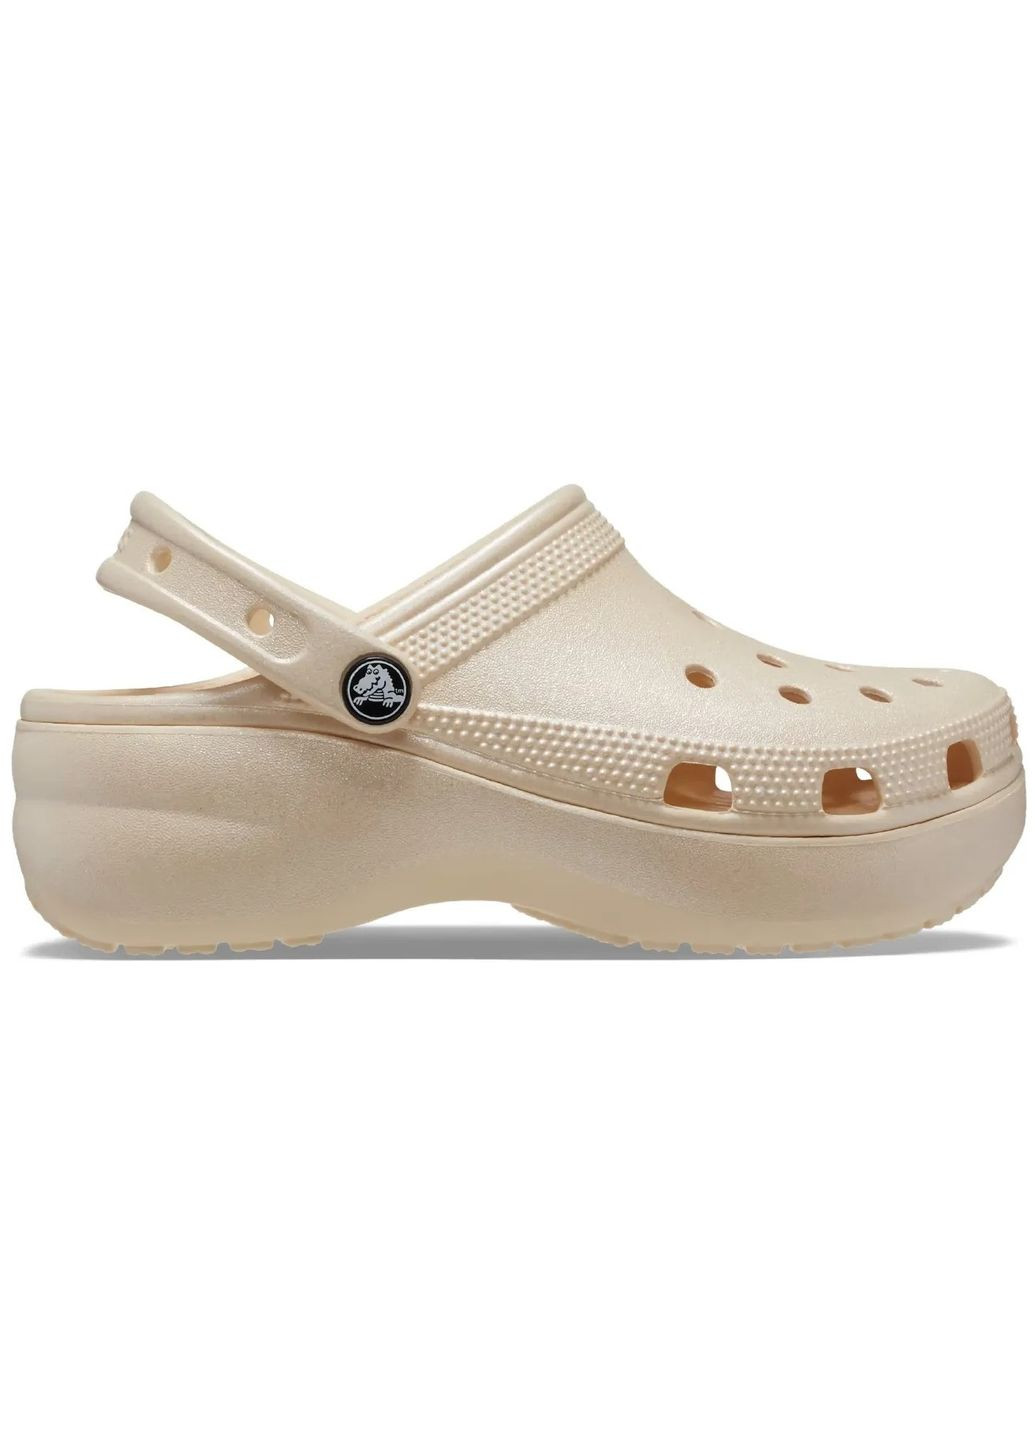 Бежевые женские кроксы classic platform shimmer clog vanilla m5w7-37-24 см 208590 Crocs